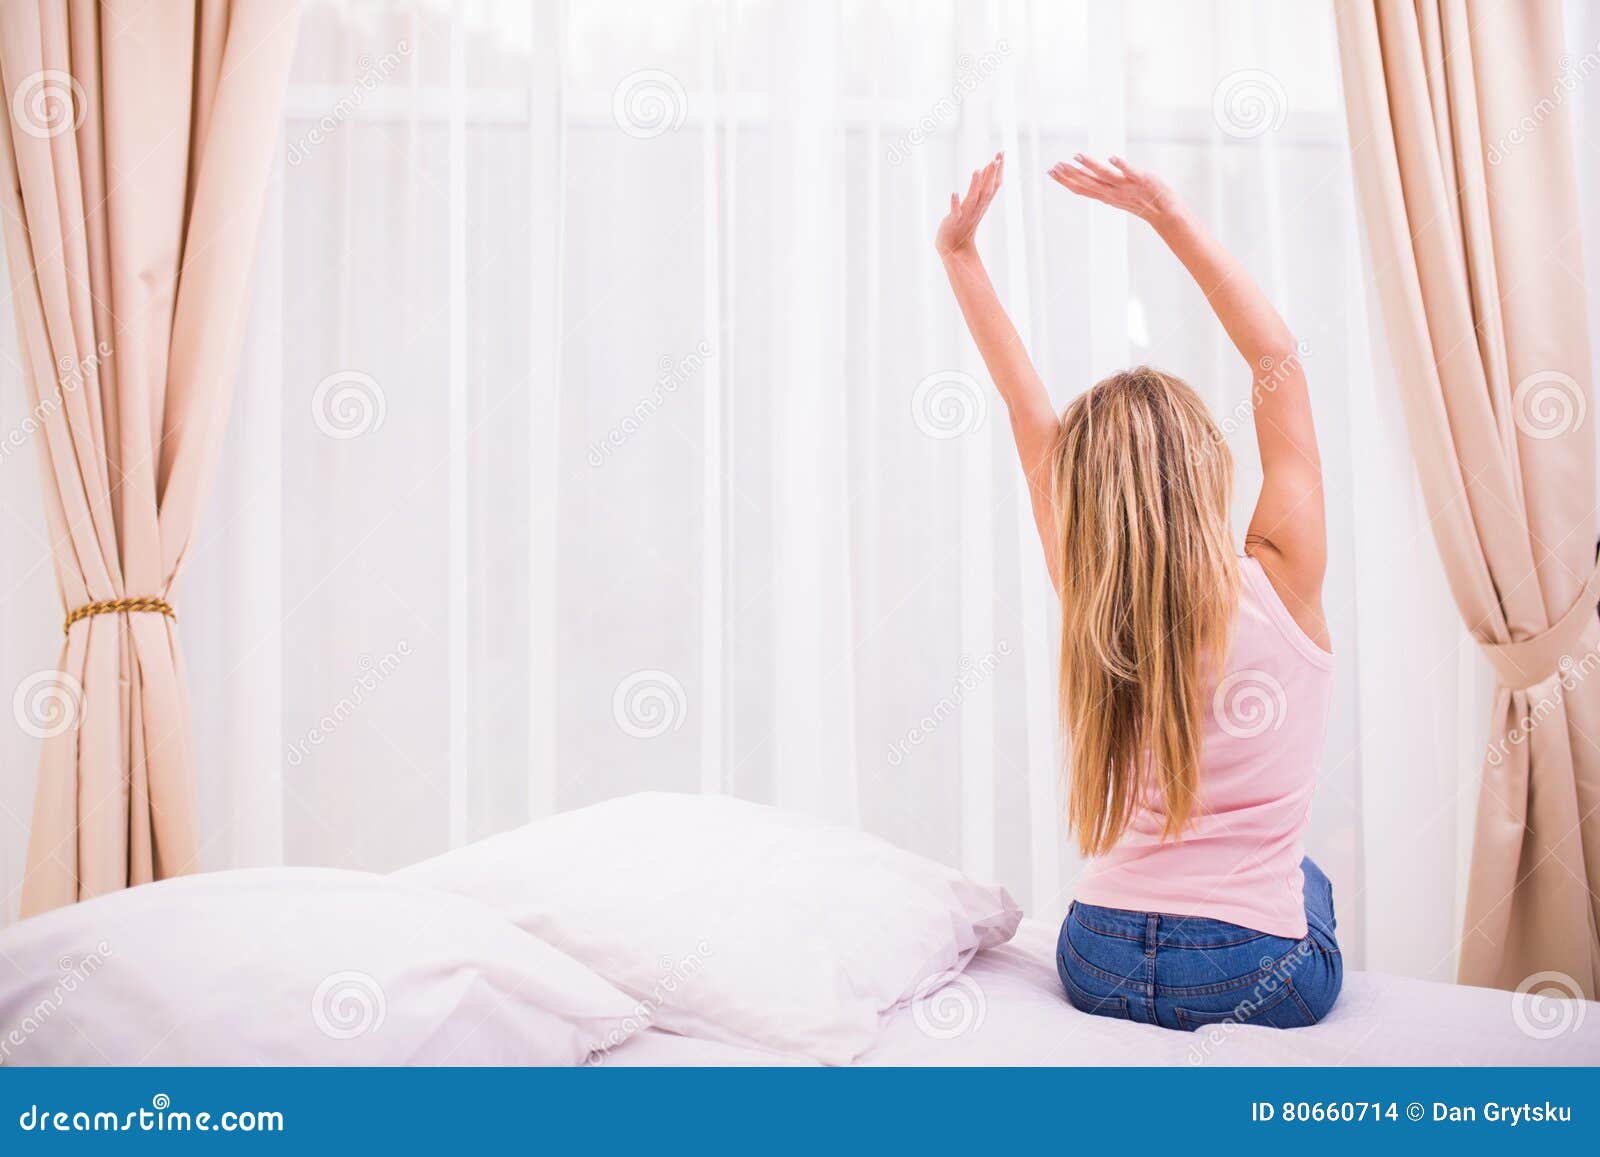 在家醒在床上的妇女 库存照片. 图片 包括有 平安, 相当, 放松, 激起, 眼睛, 微笑, 纵向, 开会 - 35060680